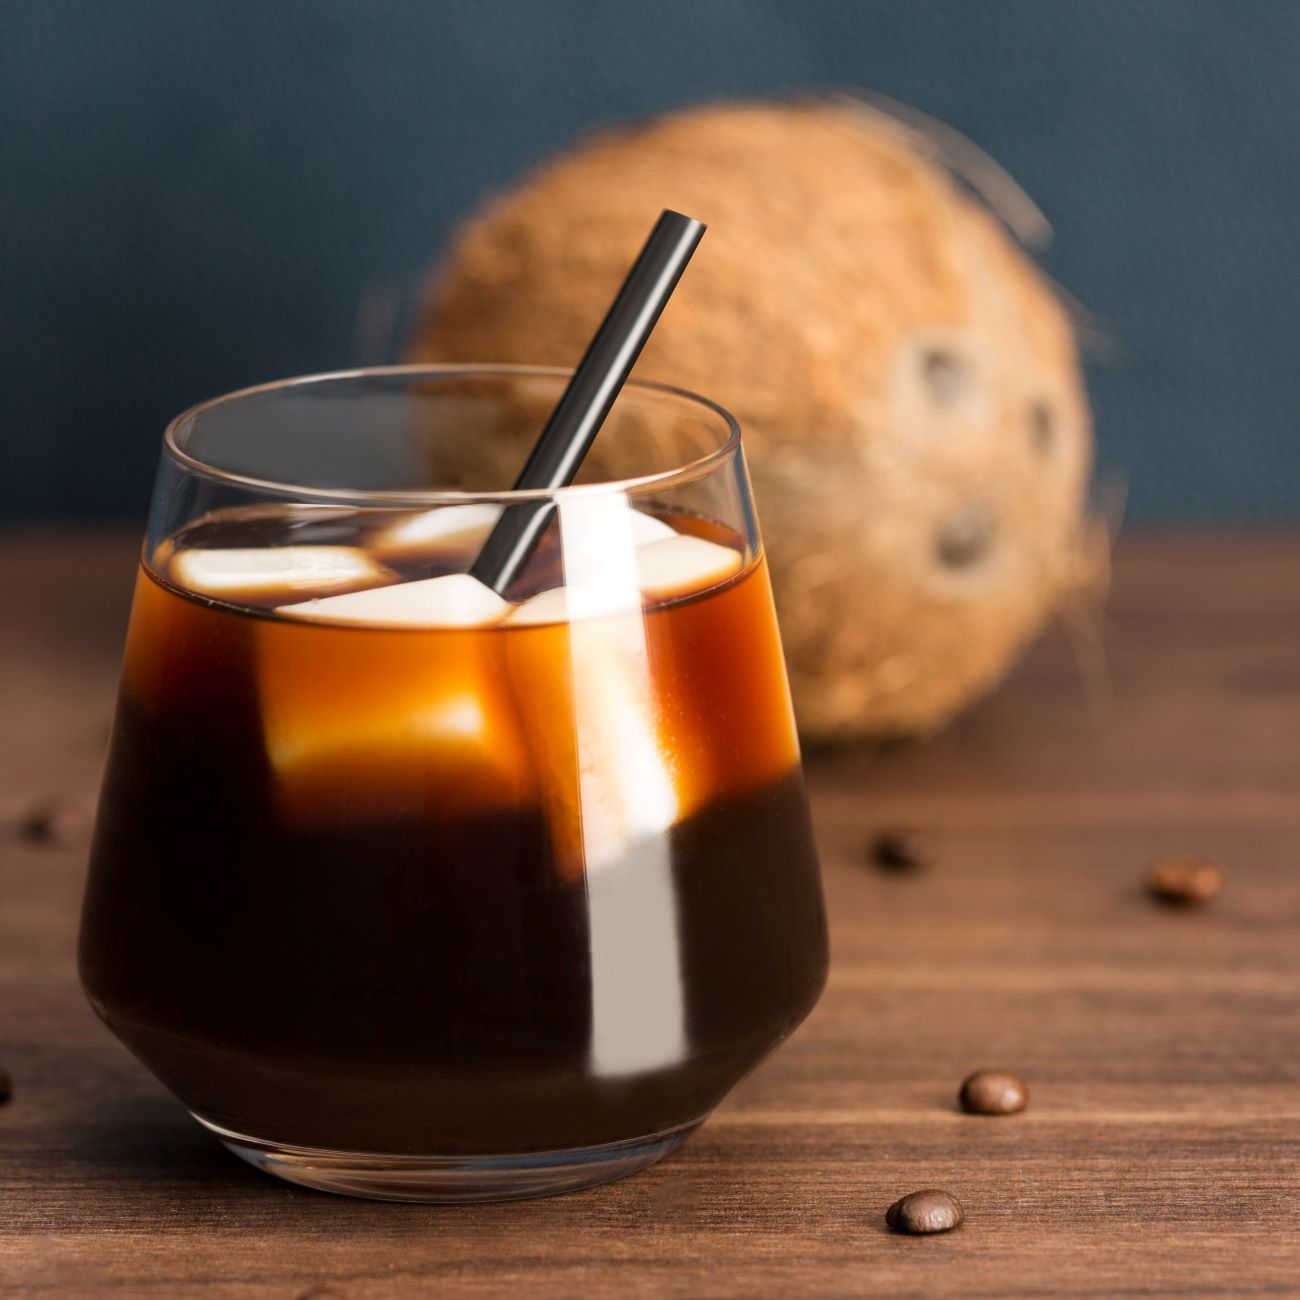 Coffe on Ice mit Kokosmilch-Eiswürfeln wird mit Strohhalm im Glas serviert.